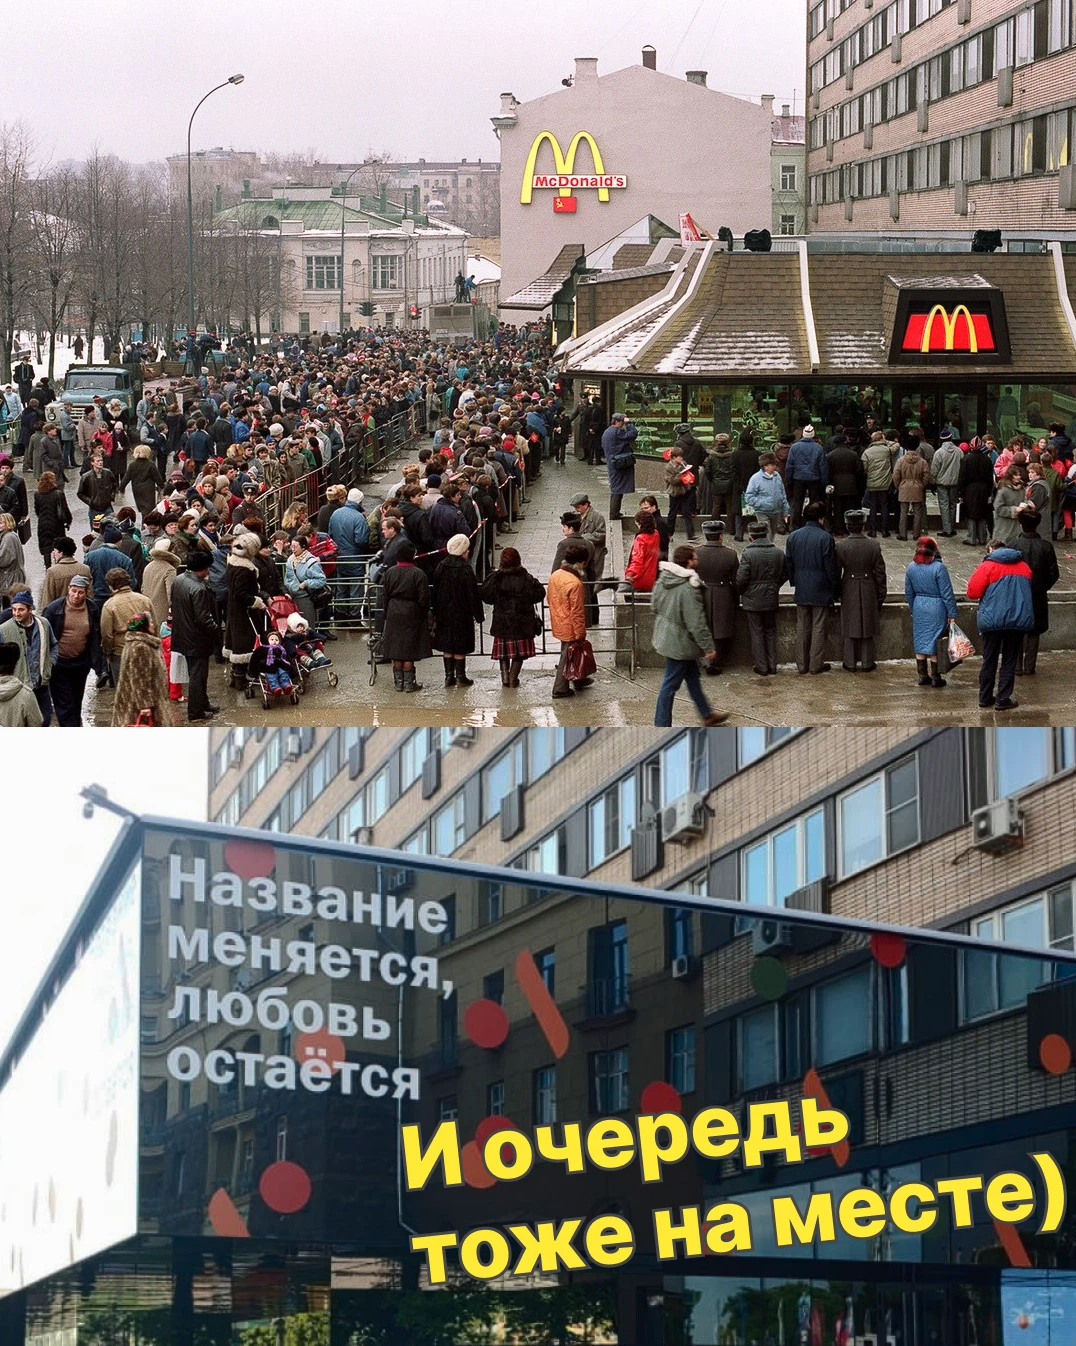 Какие макдональдсы открылись в москве. Макдональдс на Пушкинской Москва 1990 очередь. Очередь в макдональдс 1990 на Пушкинской. 31 Января 1990 в Москве открылся макдональдс. Открытие Макдональдса на Пушкинской 1990.